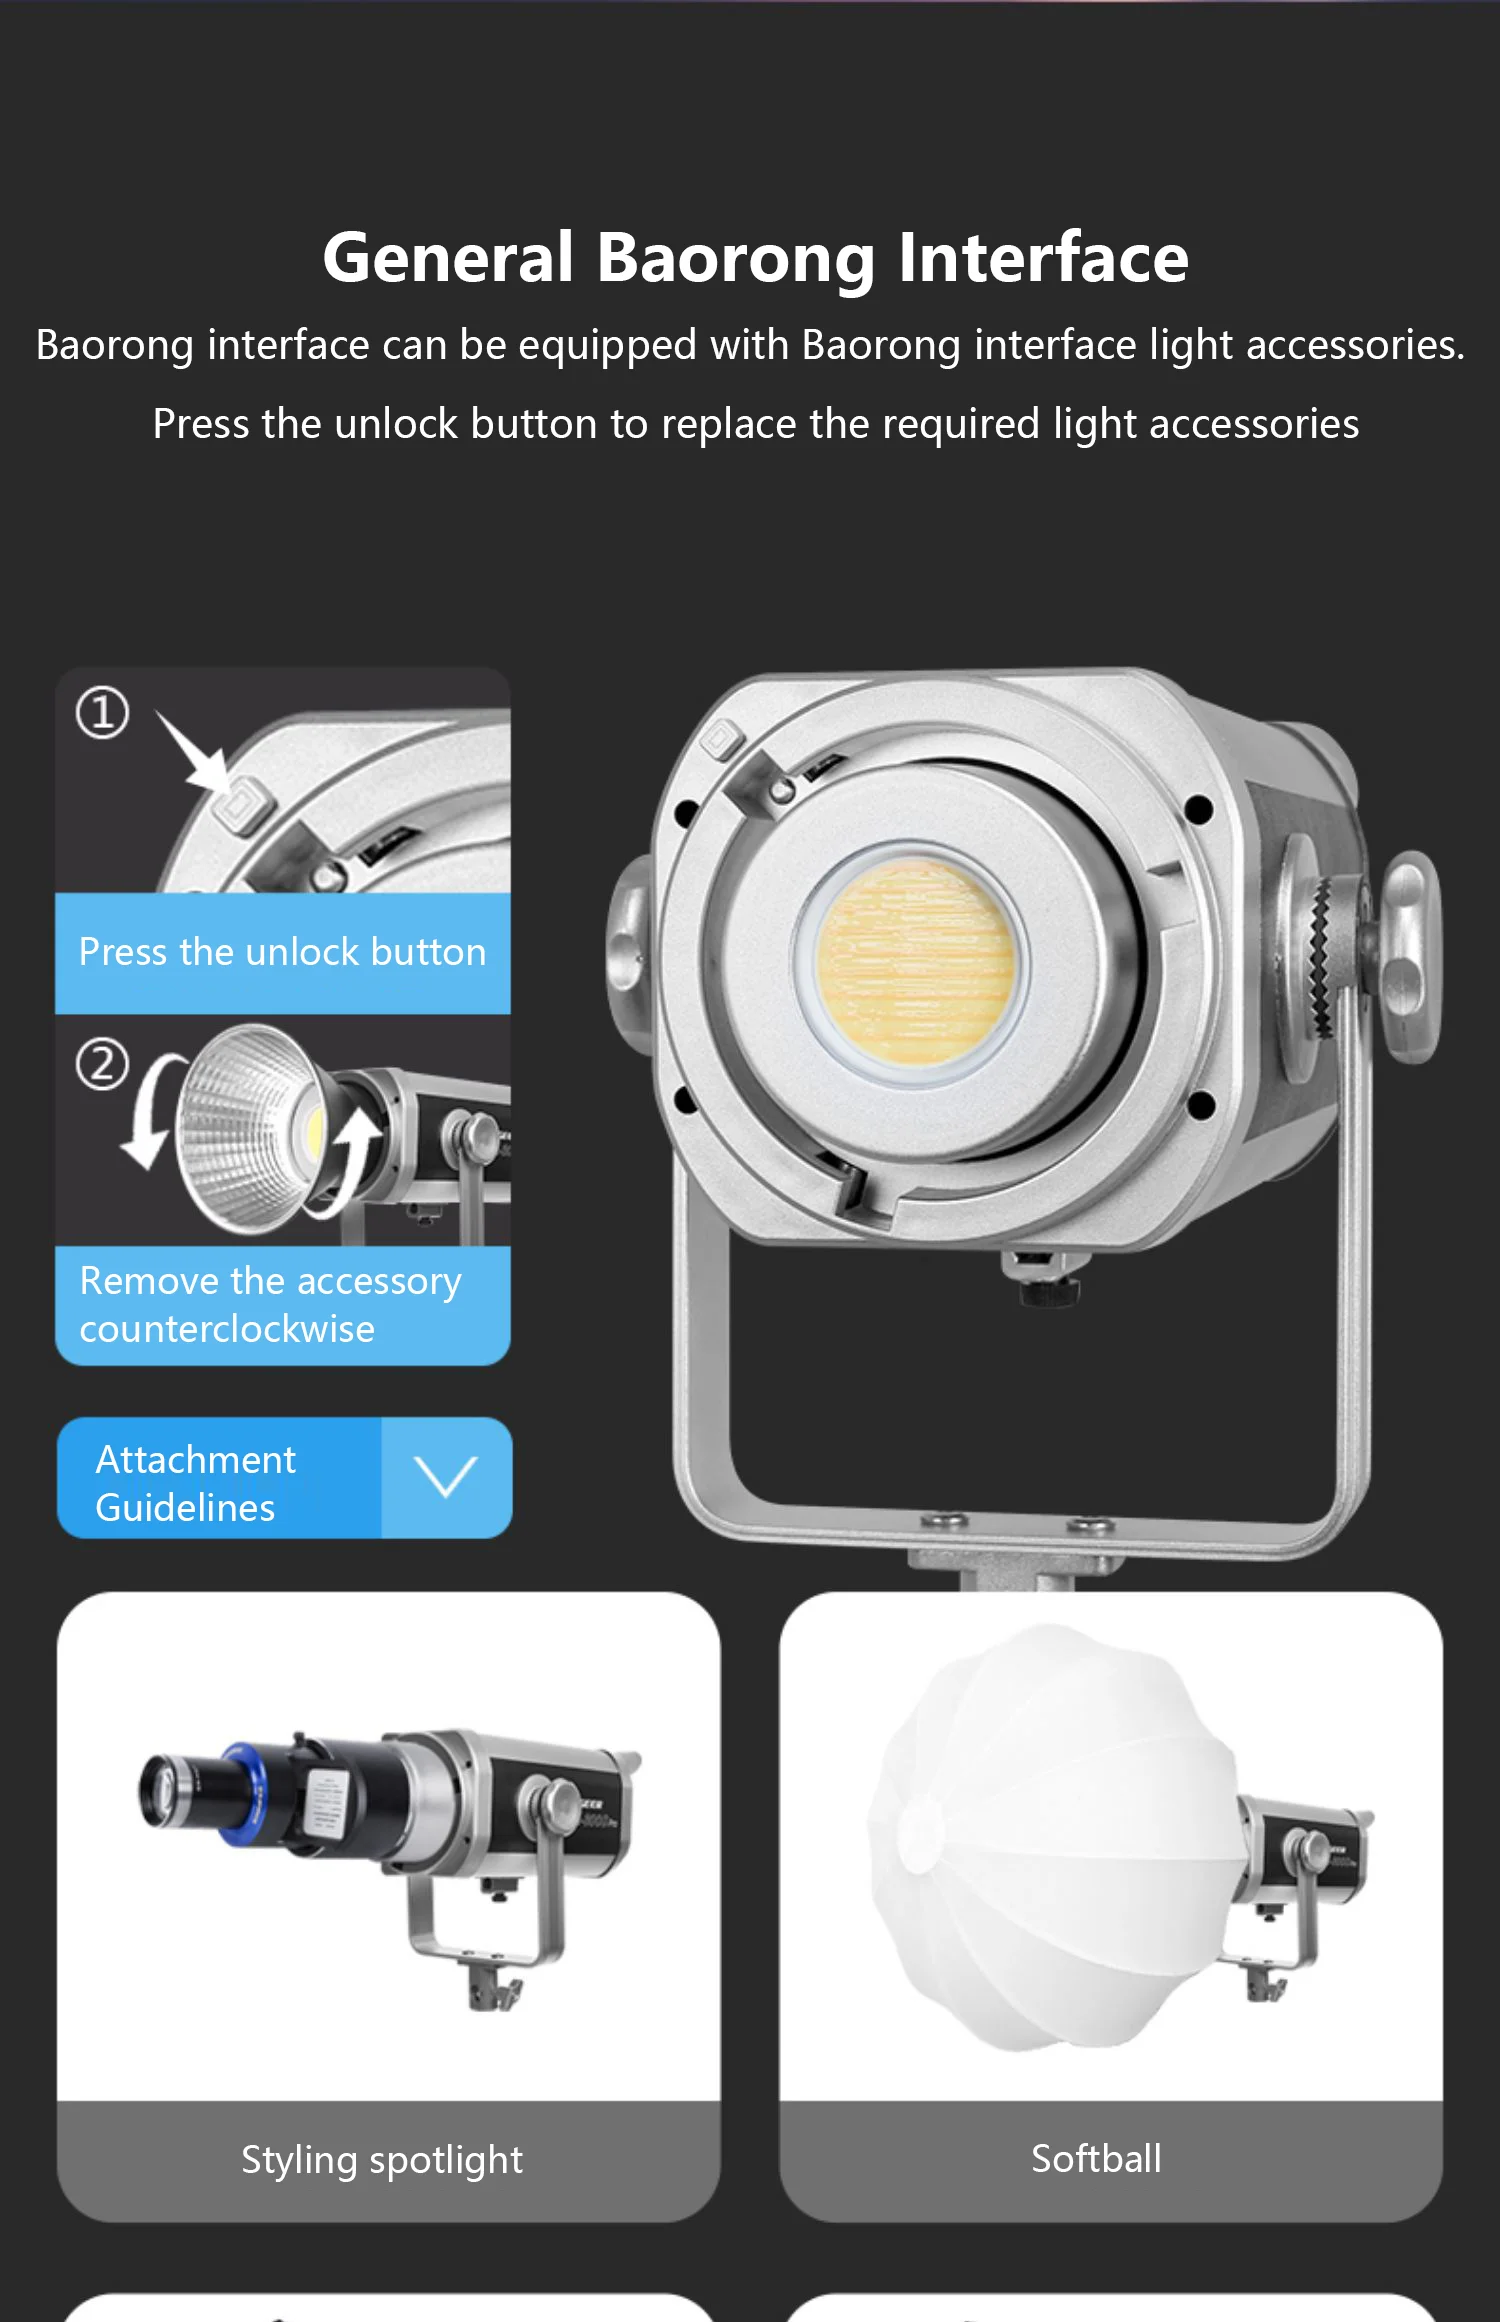 YONGEER XL-300S-Pro 300 W Студиен Видеосвет За Снимане на КОЧАН Light 2700 К-6500 До 12 Режима на светлинния ефект За фото студио